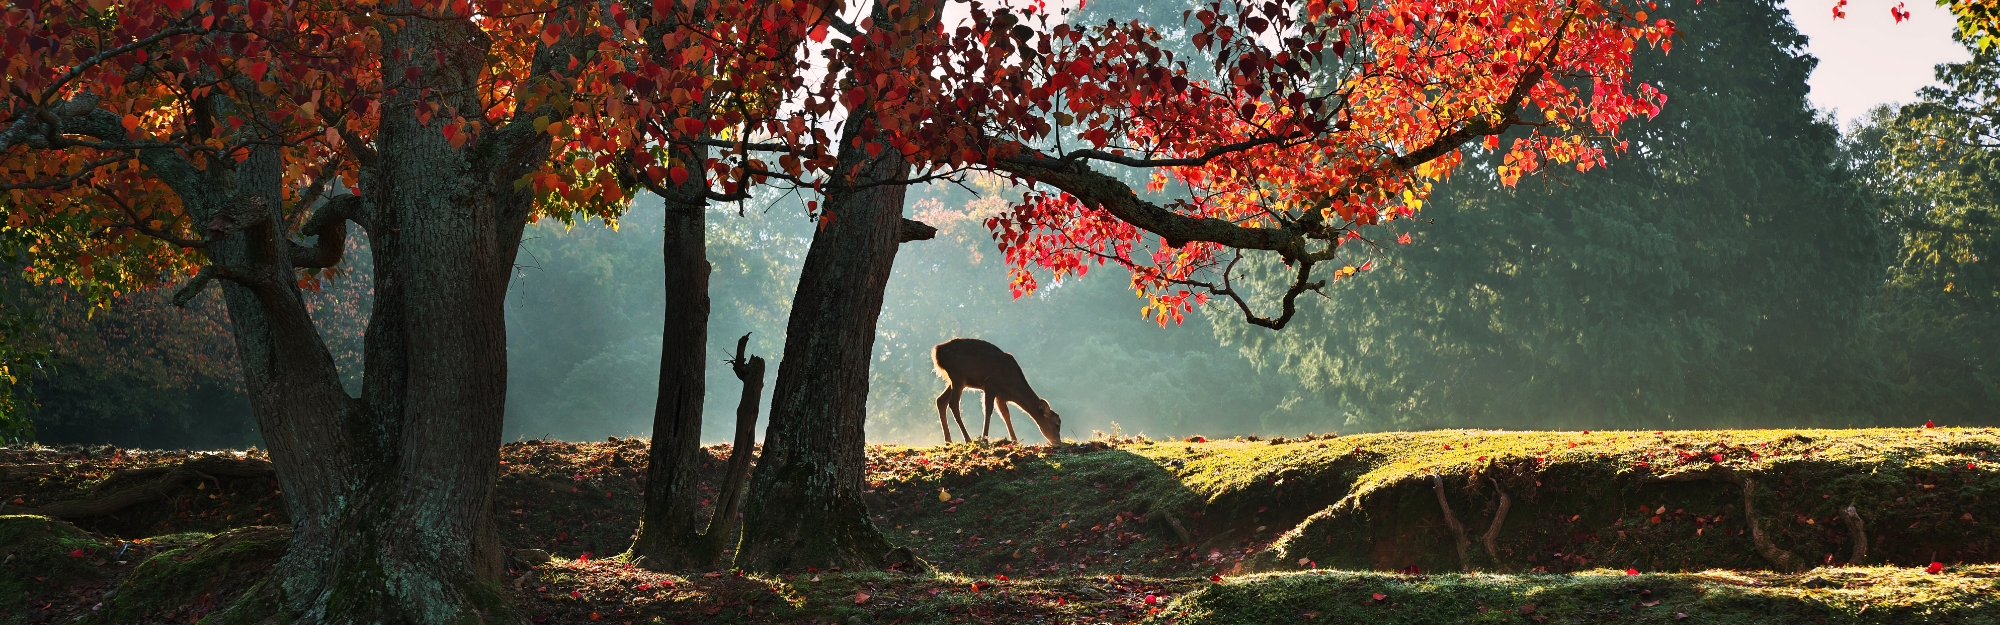 鹿が紅葉のとなりにいる景色